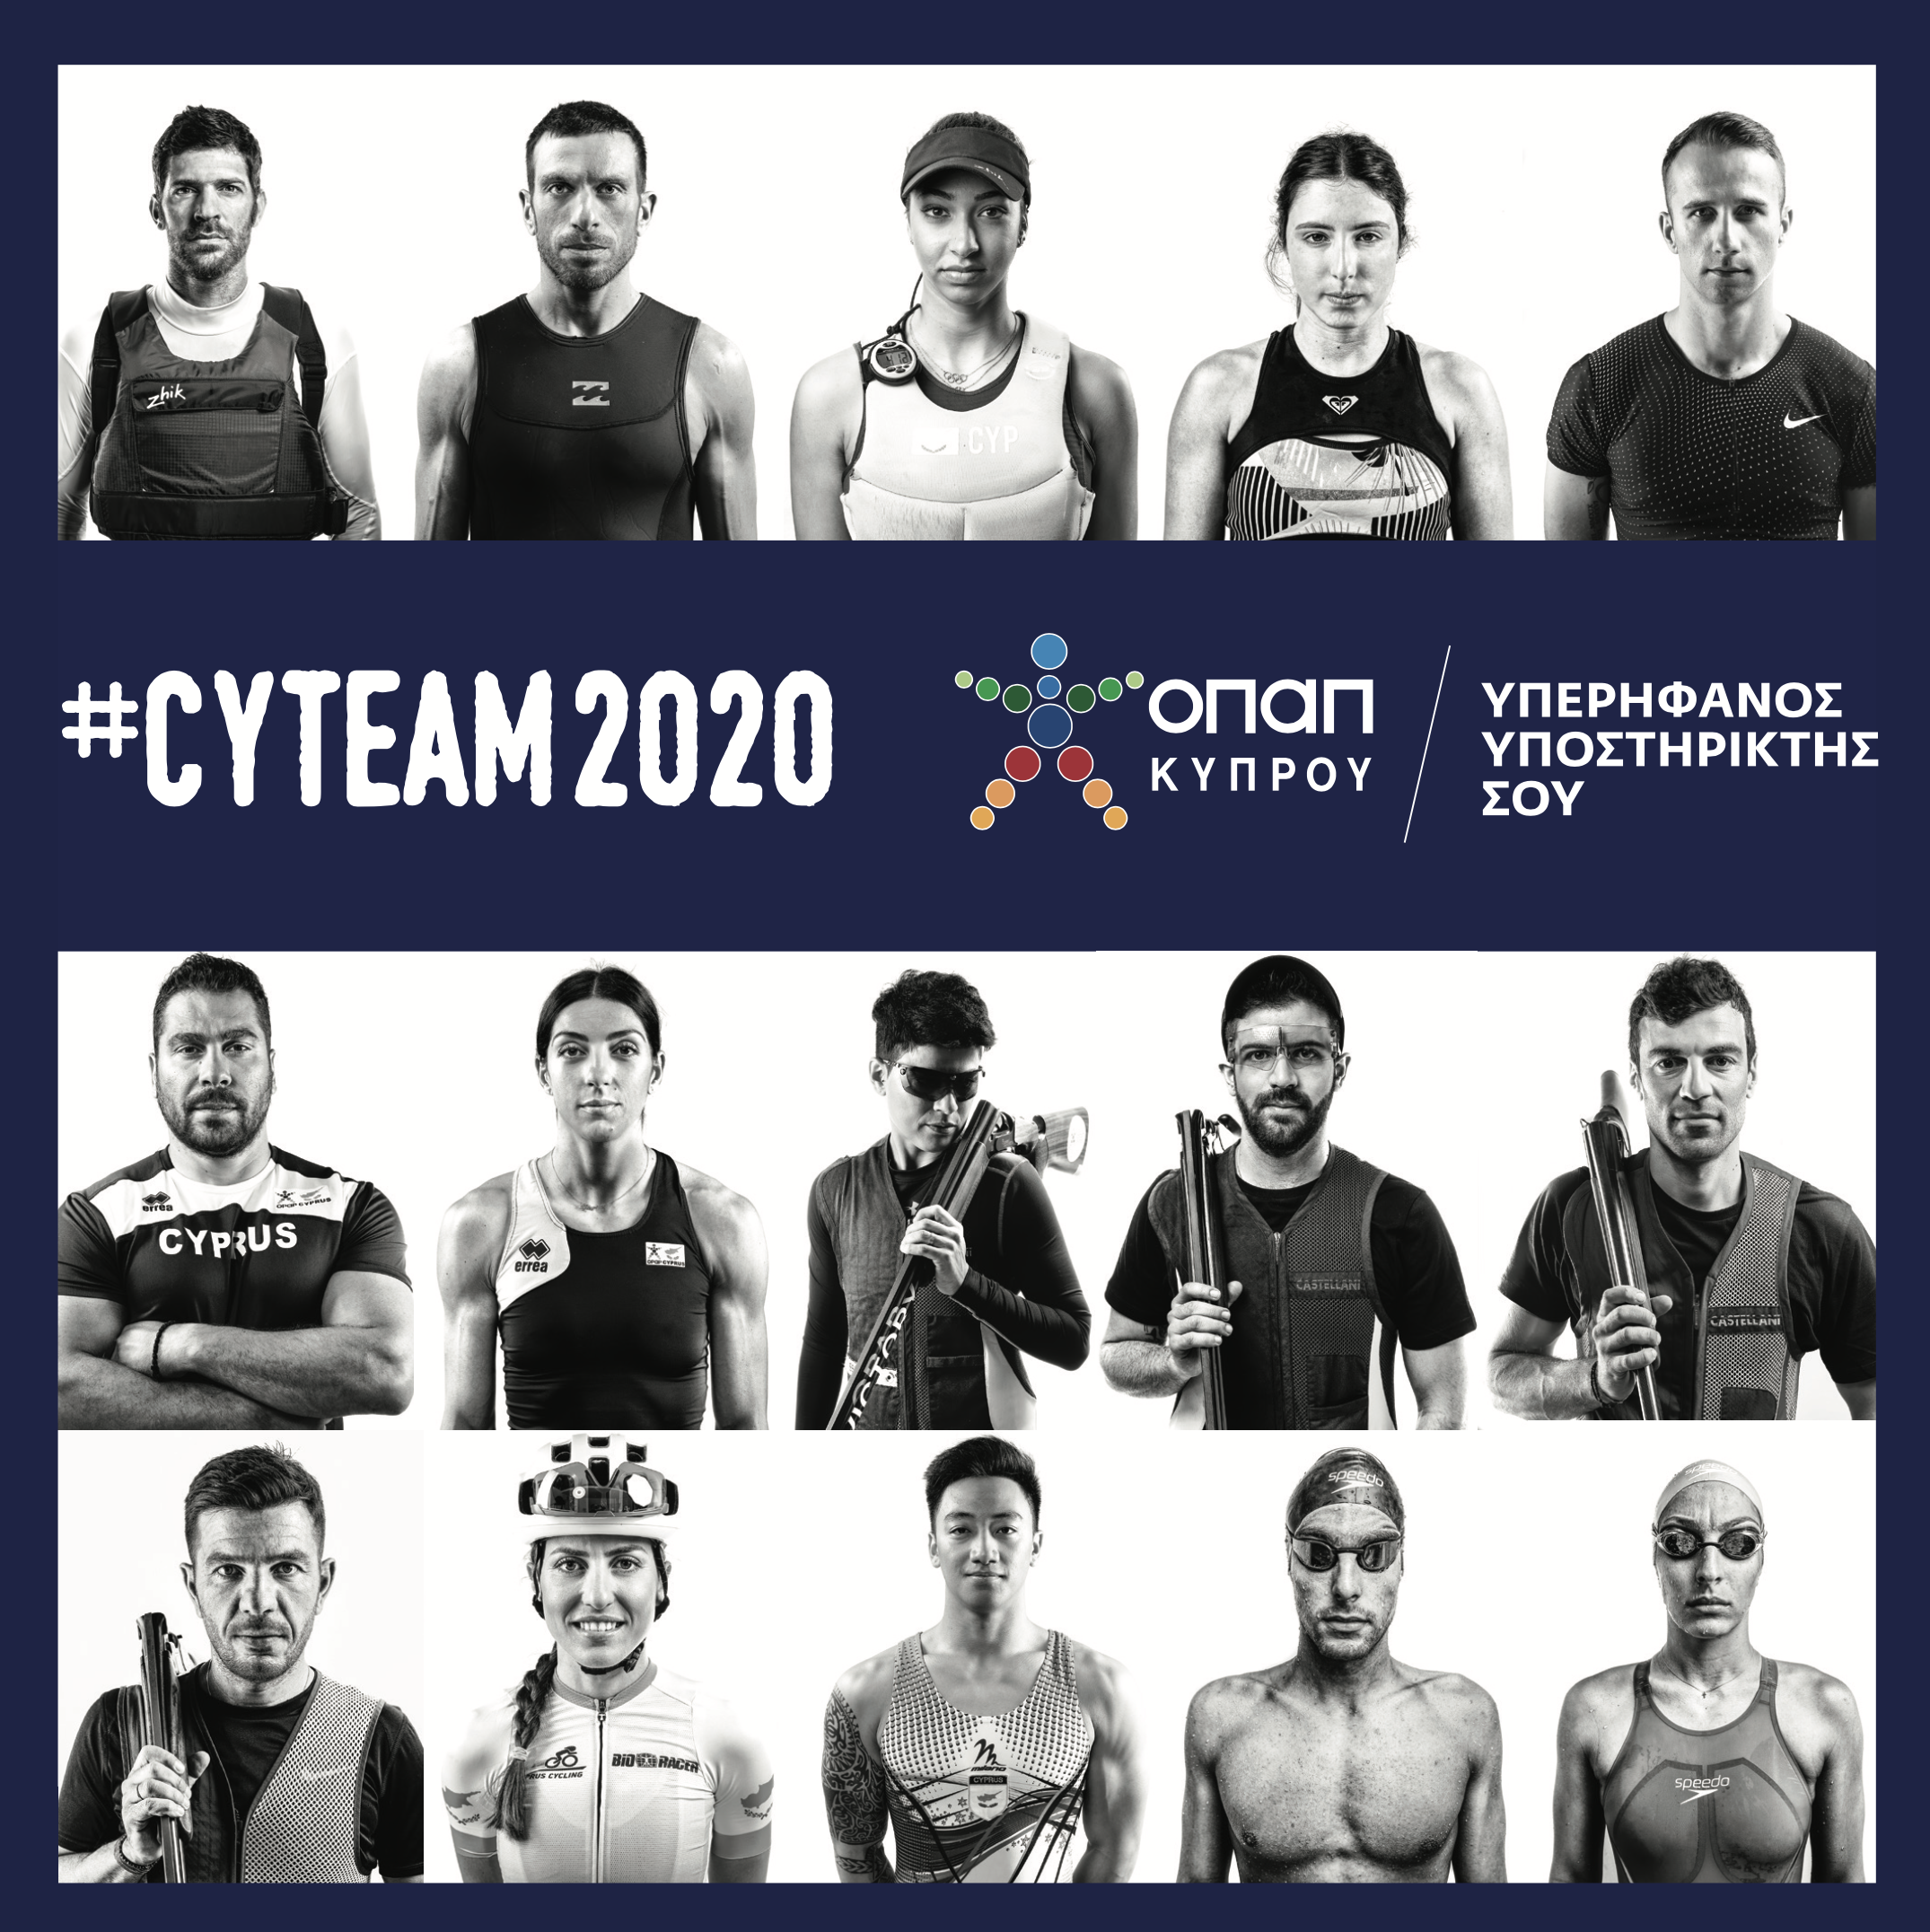 Η ΟΠΑΠ Κύπρου κατευοδώνει υπέροχα την ολυμπιακή μας ομάδα